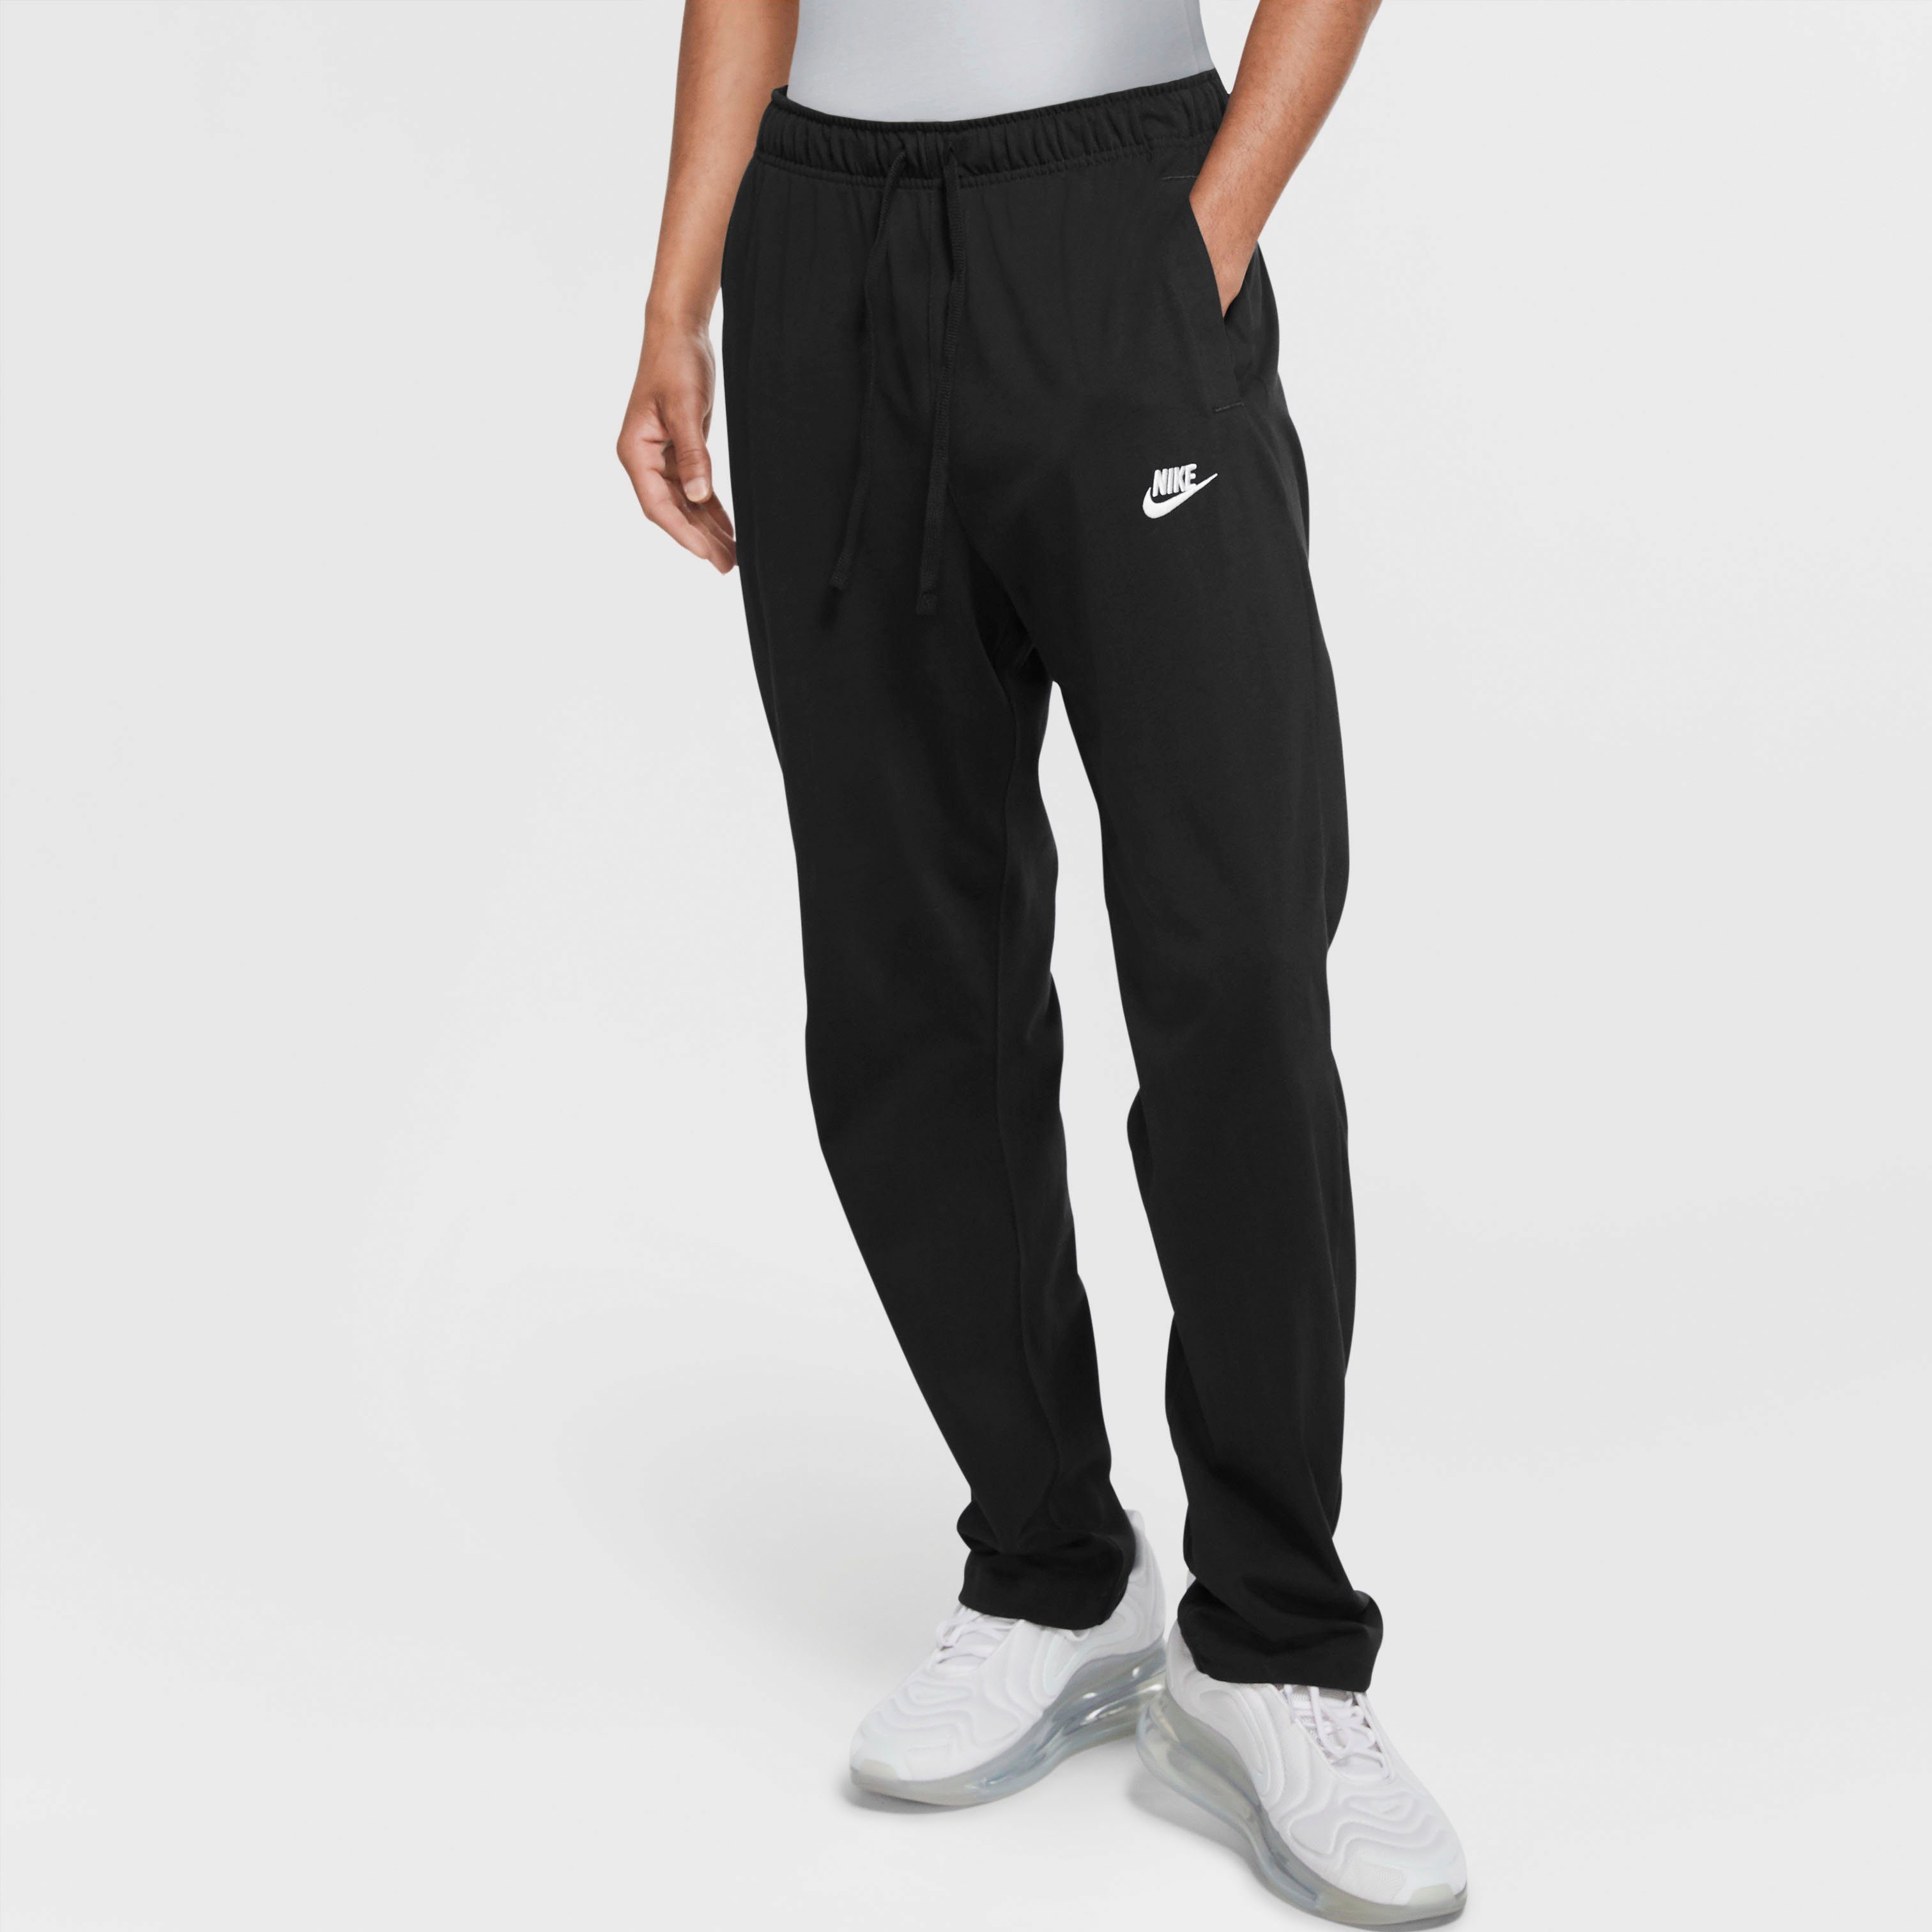 Nike Sportswear Herren Hose online kaufen | OTTO